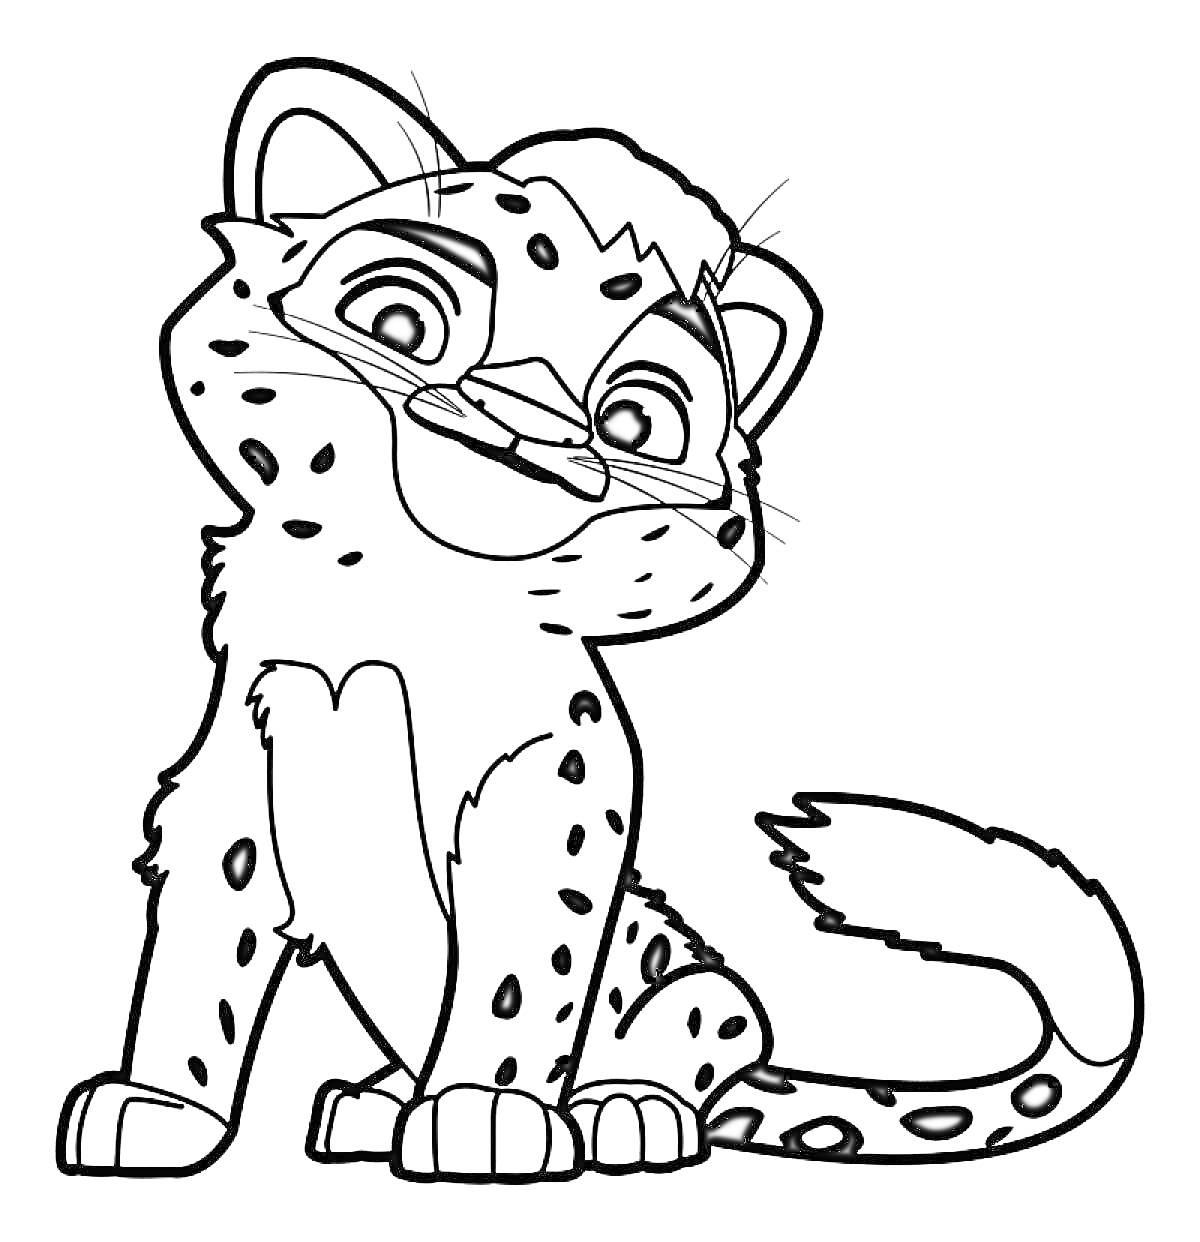 Леопард, сидящий на задних лапах, с пятнистым мехом, улыбается